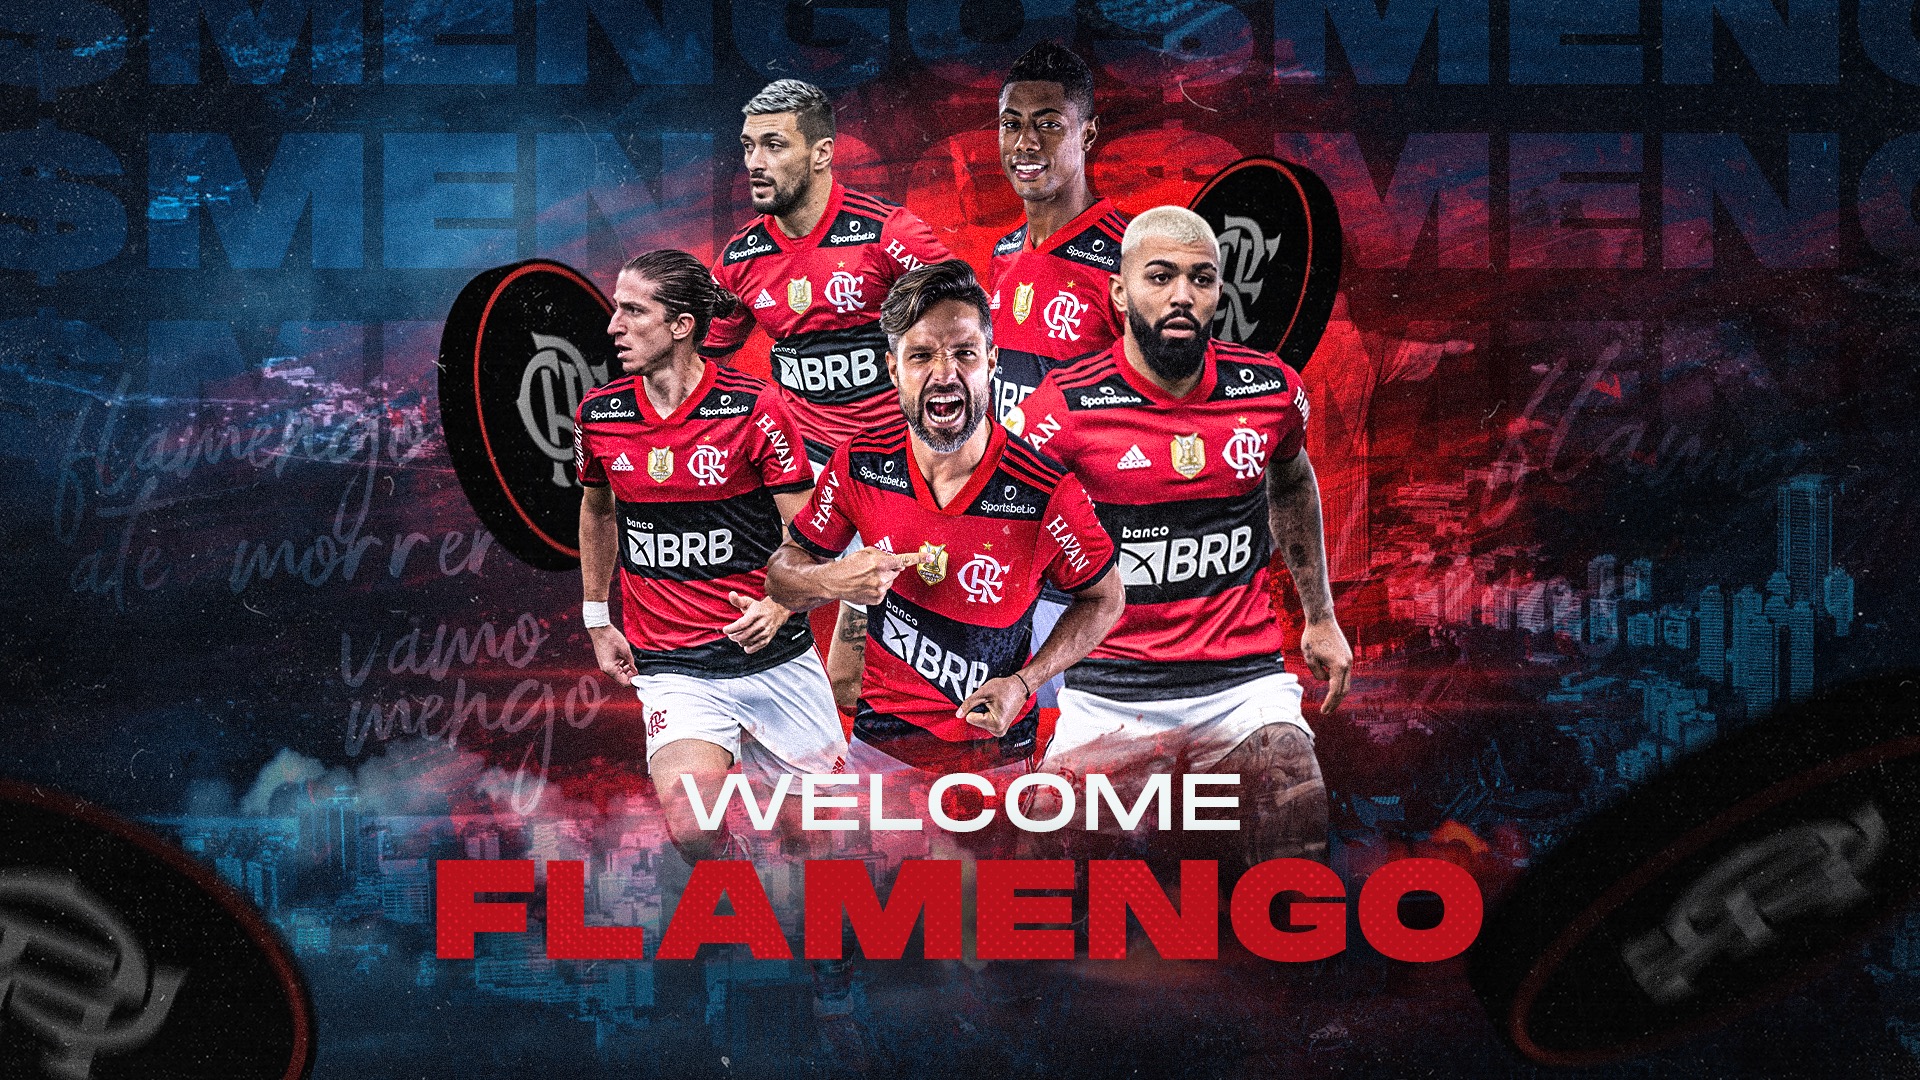 Il Flamengo, Top Club del calcio brasiliano, passa alle criptovalute - Flamengo Final